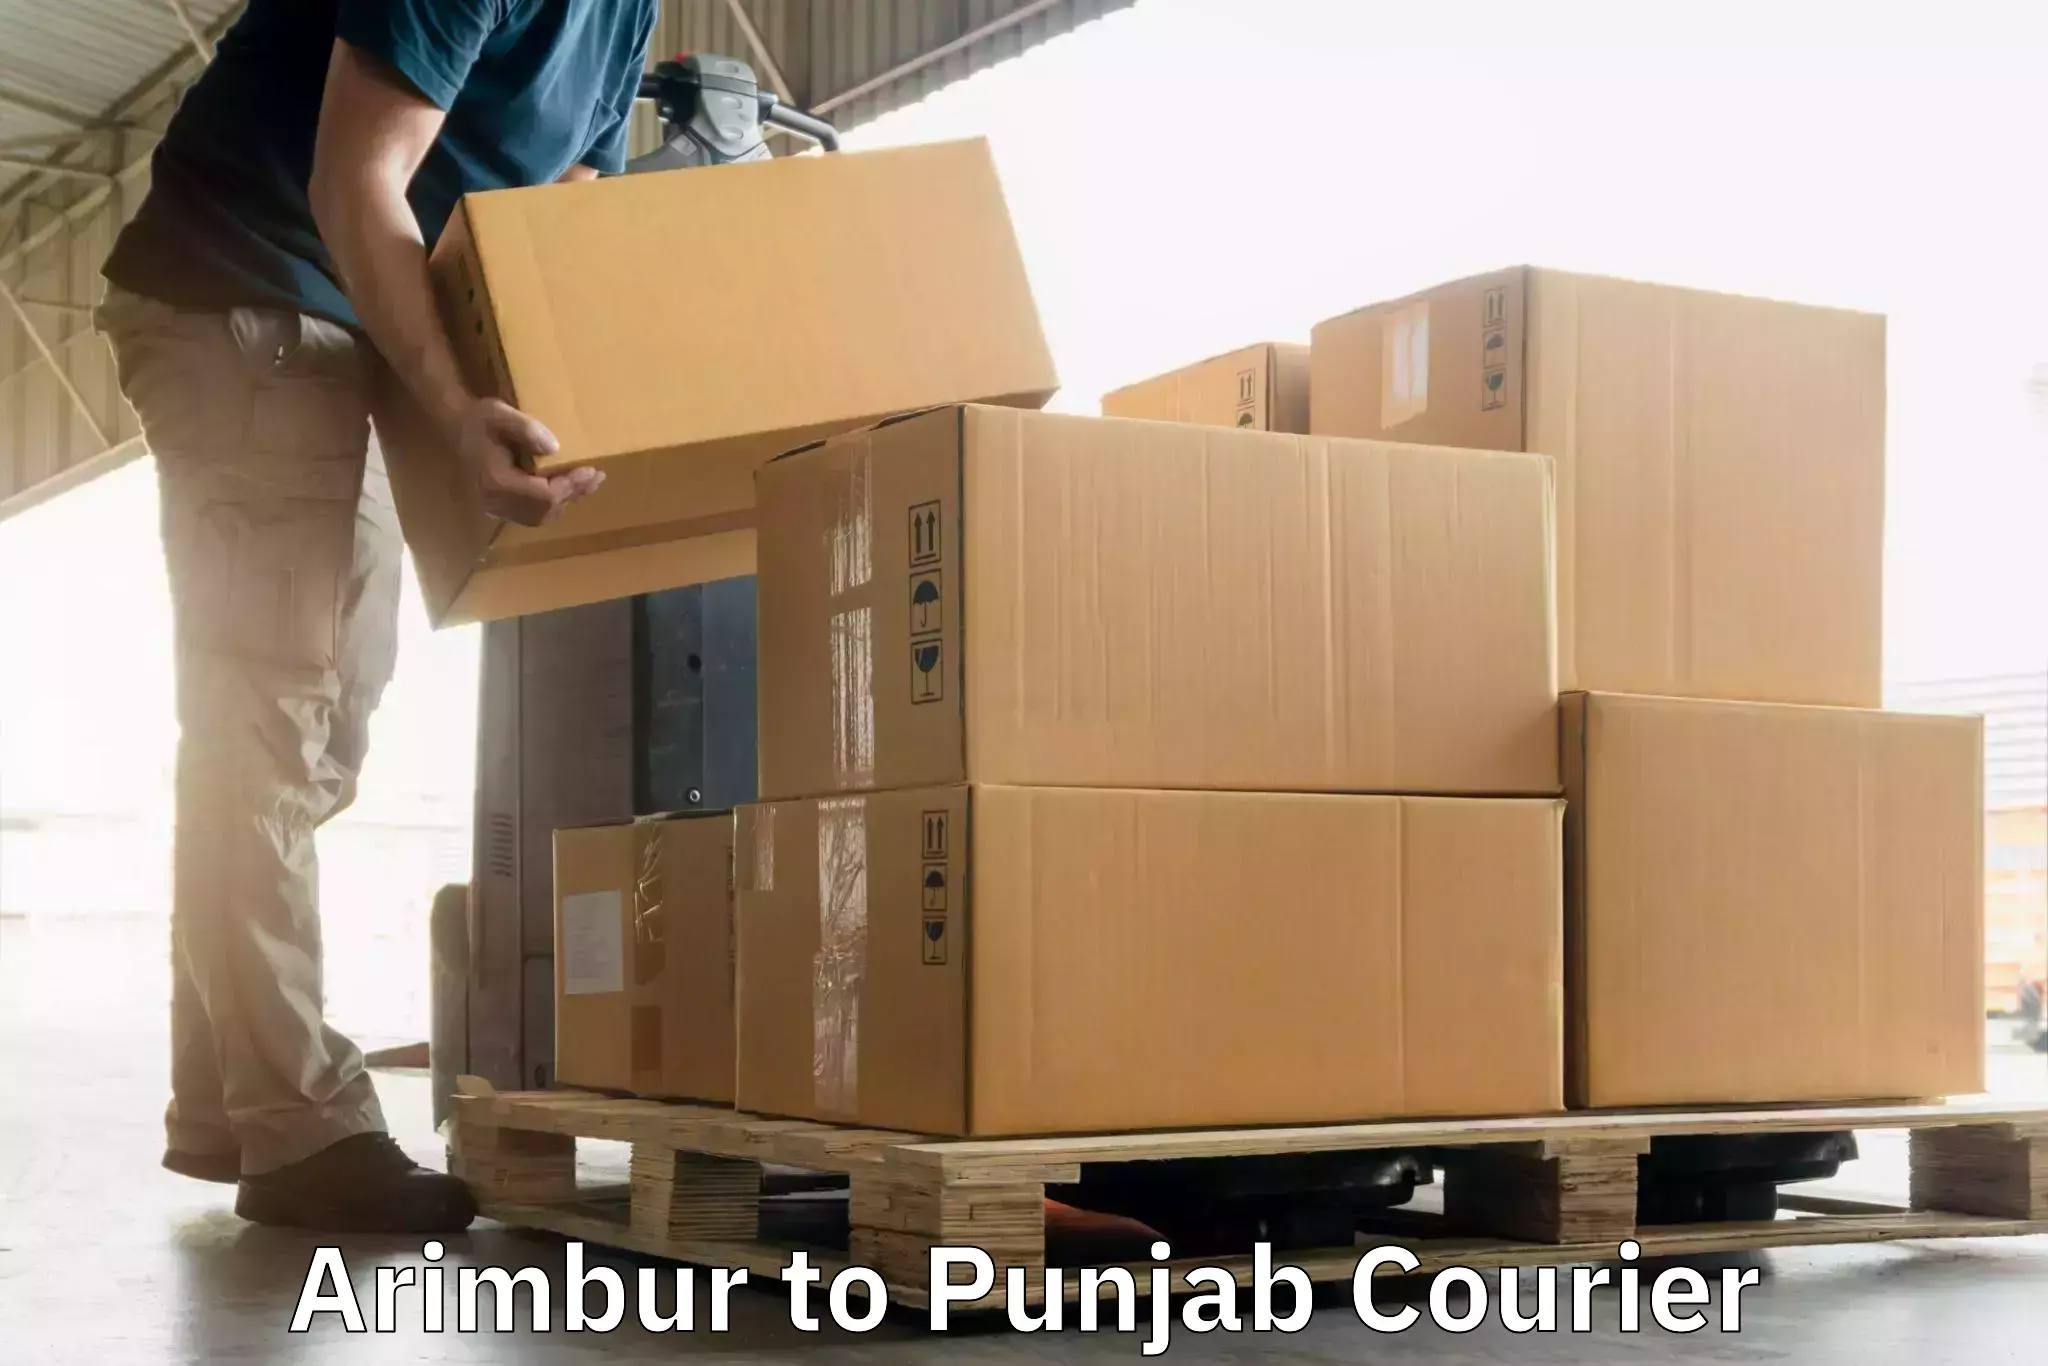 High-speed delivery Arimbur to Punjab